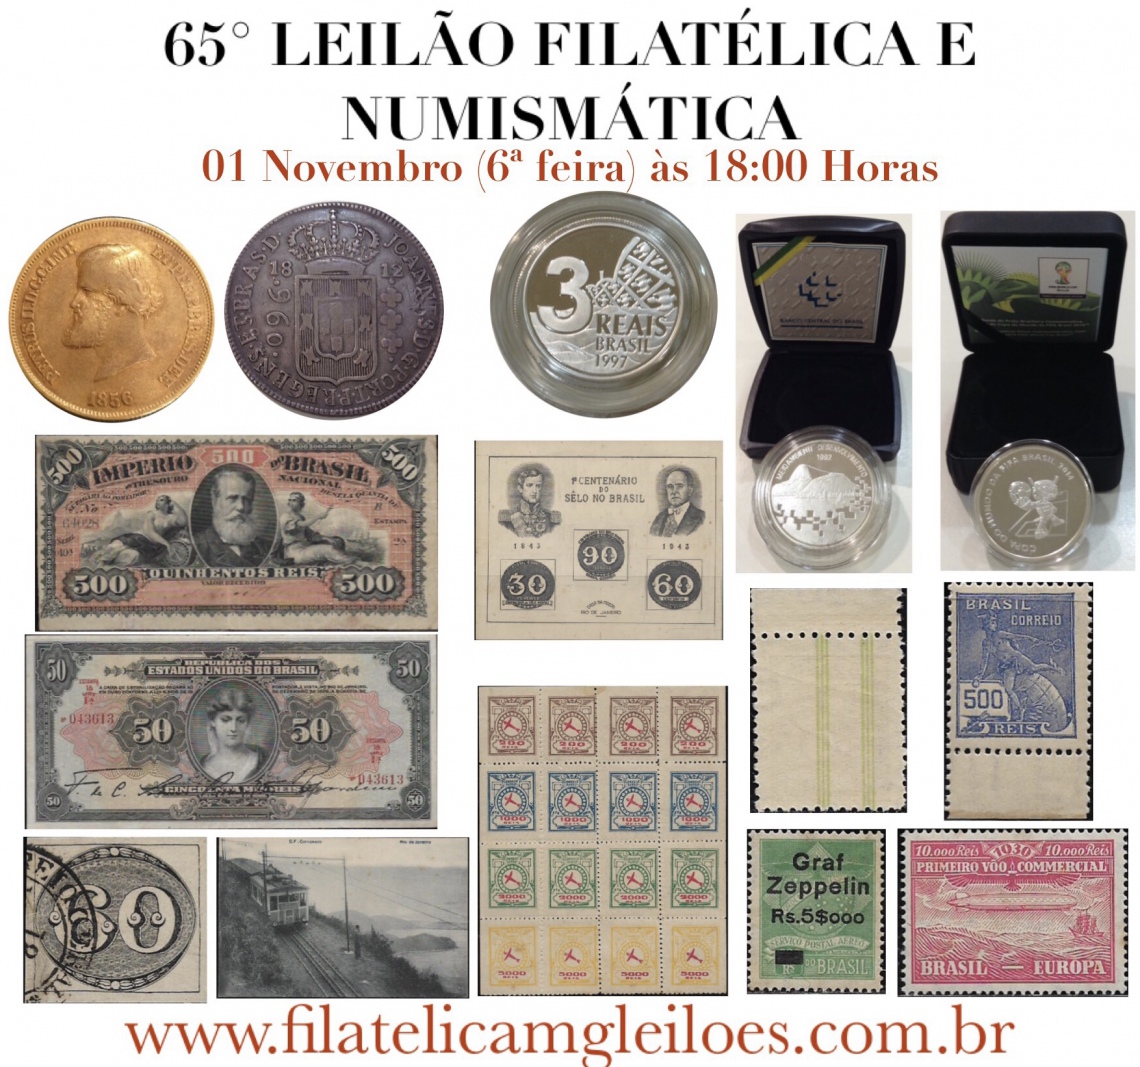 65º Leilão de Filatelia e Numismática